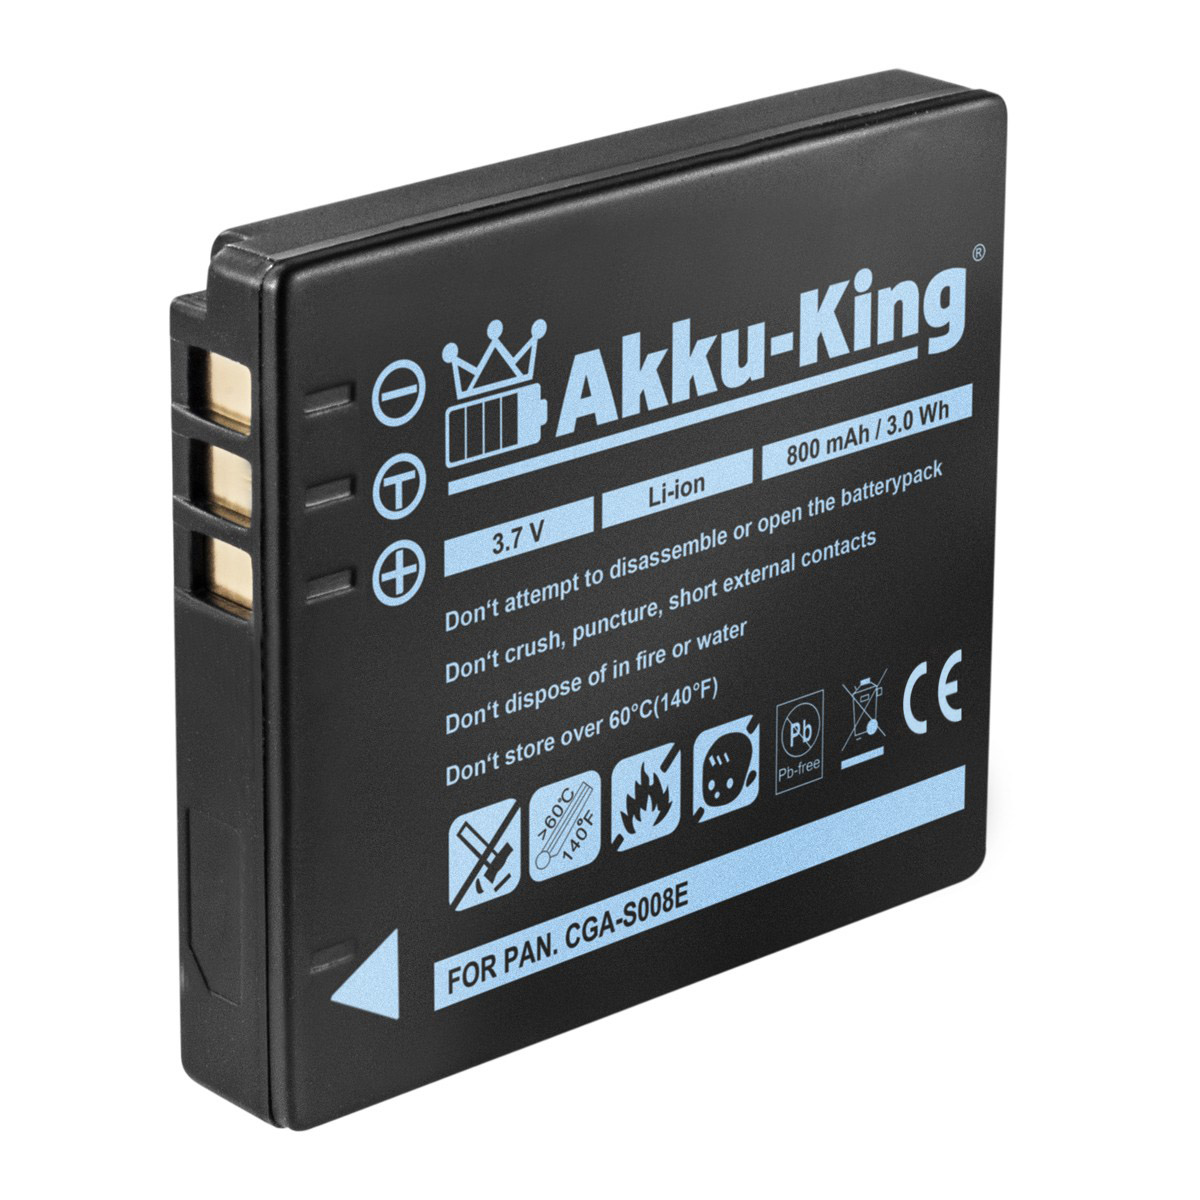 AKKU-KING Akku kompatibel mit Volt, Kamera-Akku, Panasonic 800mAh CGA-S008E Li-Ion 3.7